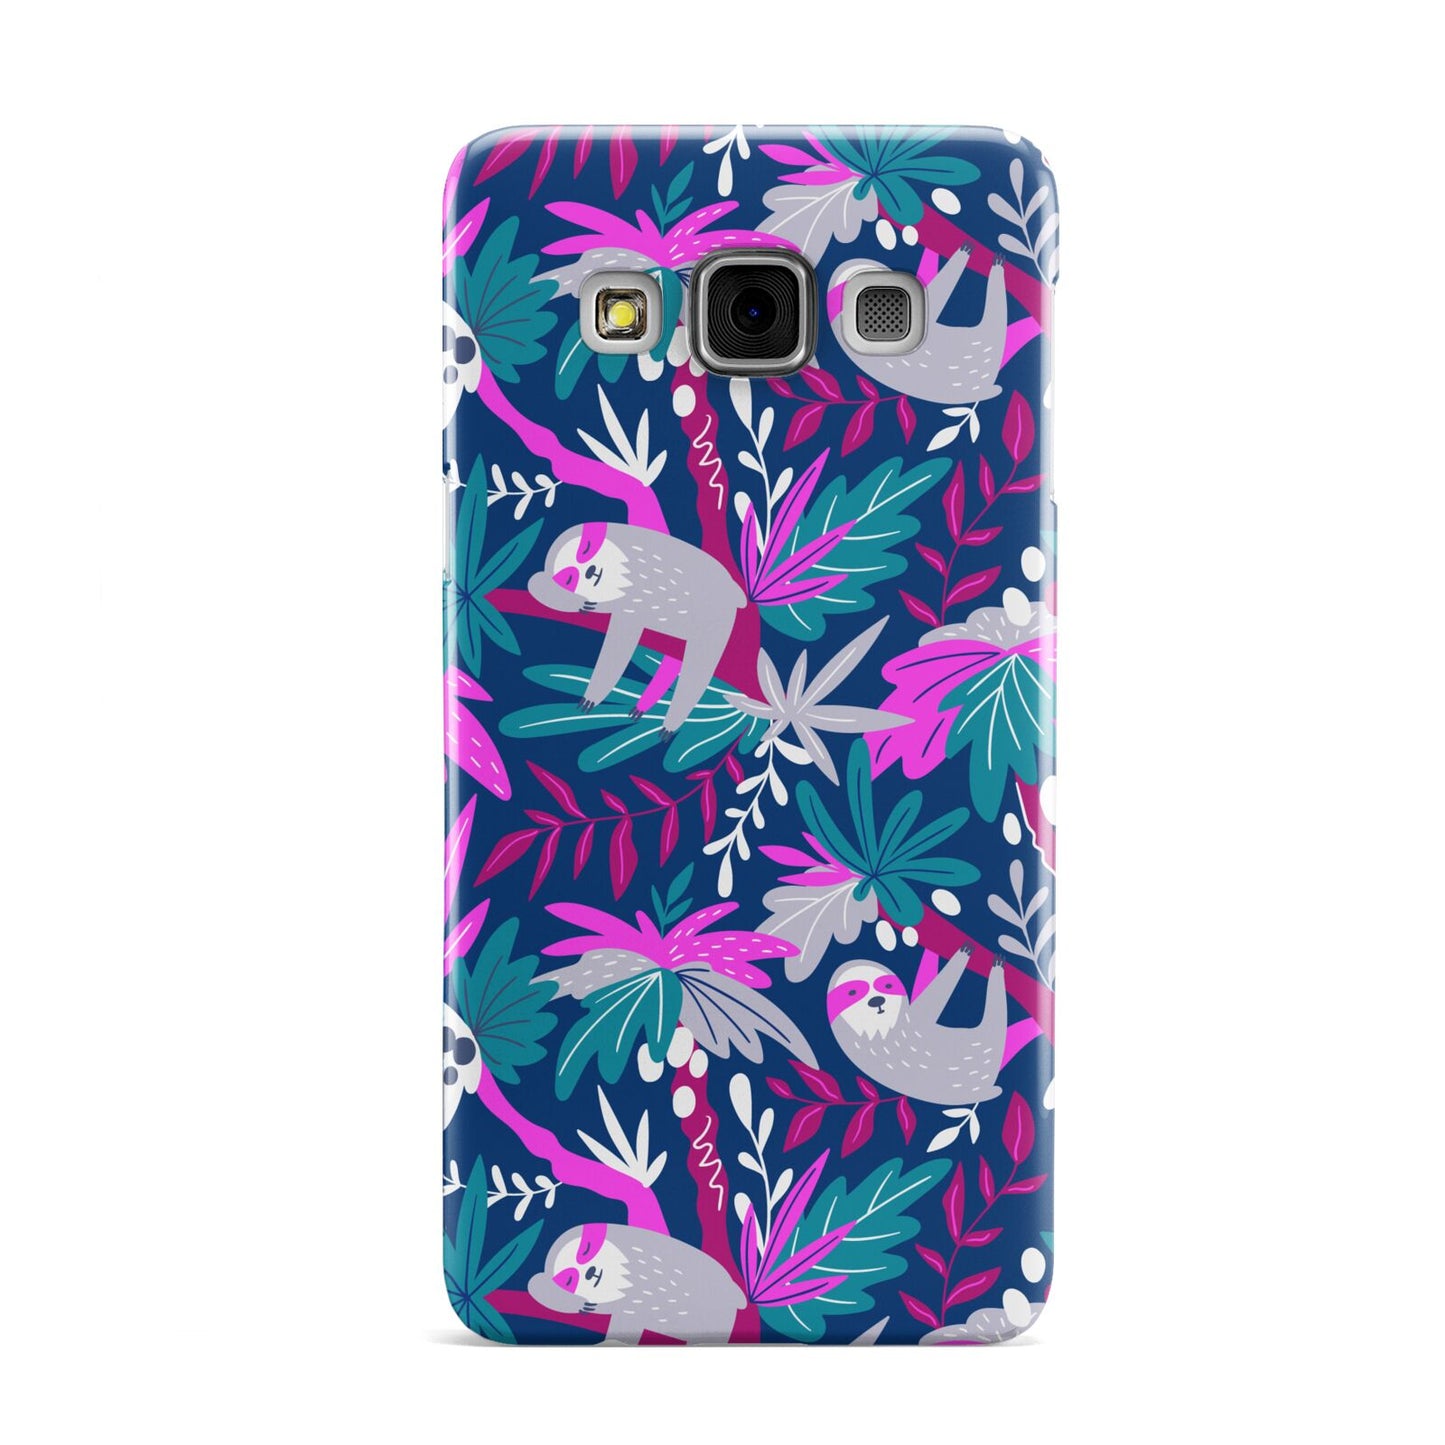 Sloth Samsung Galaxy A3 Case